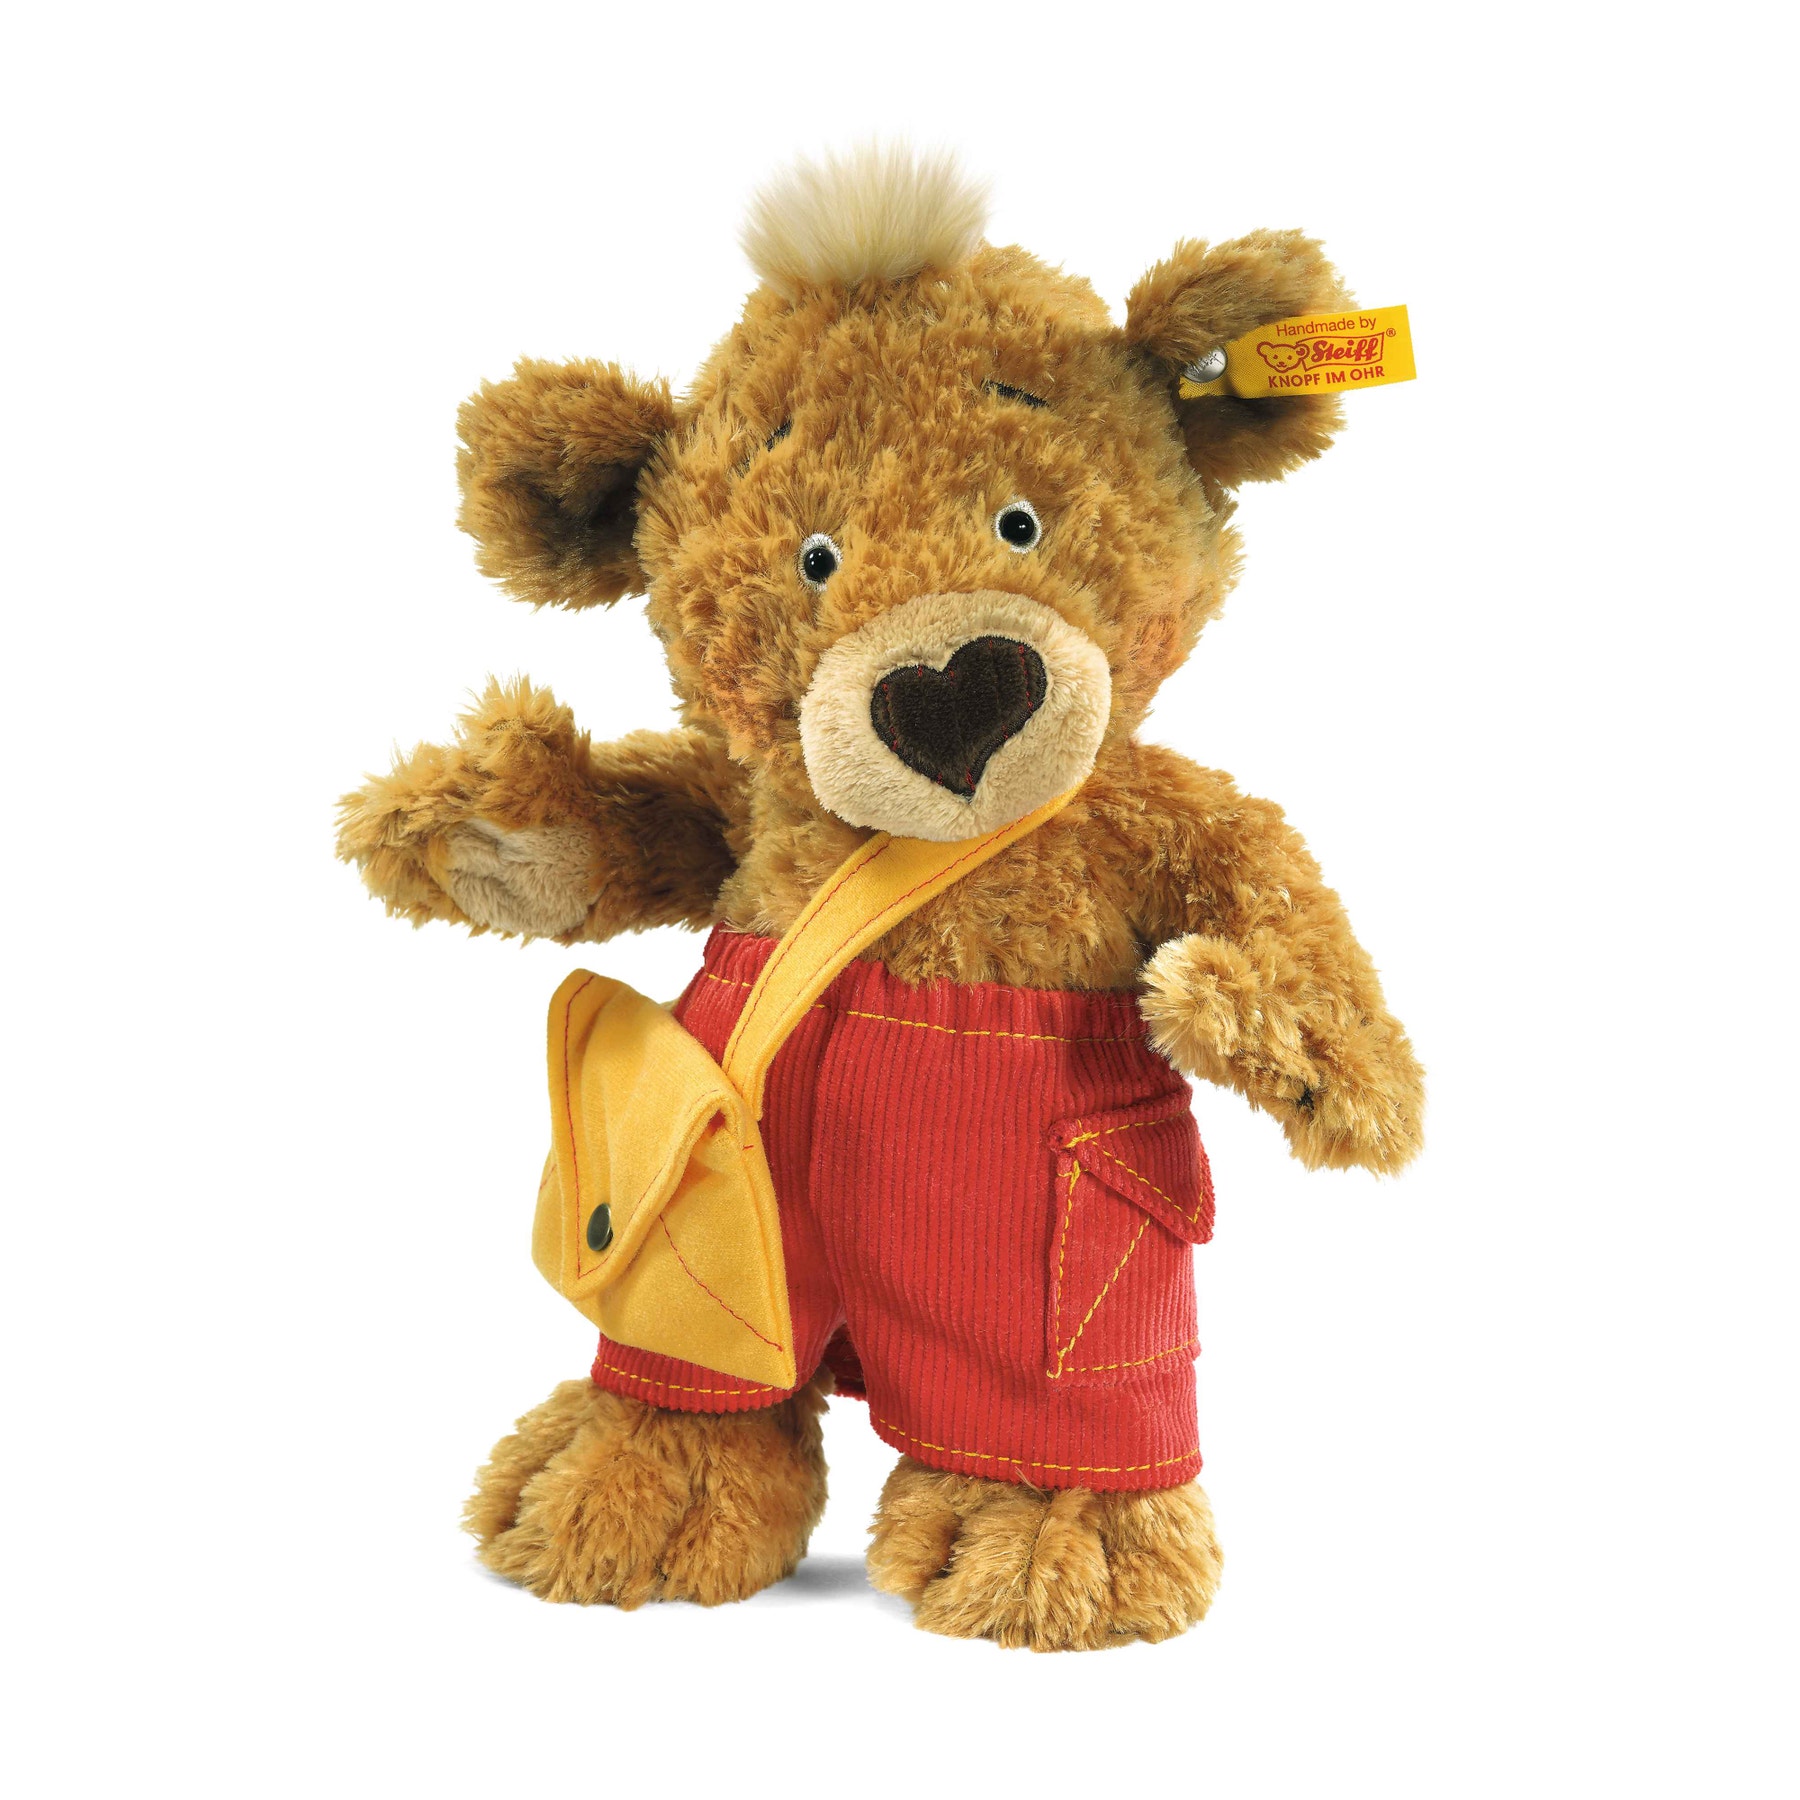 Knopf Teddy bear